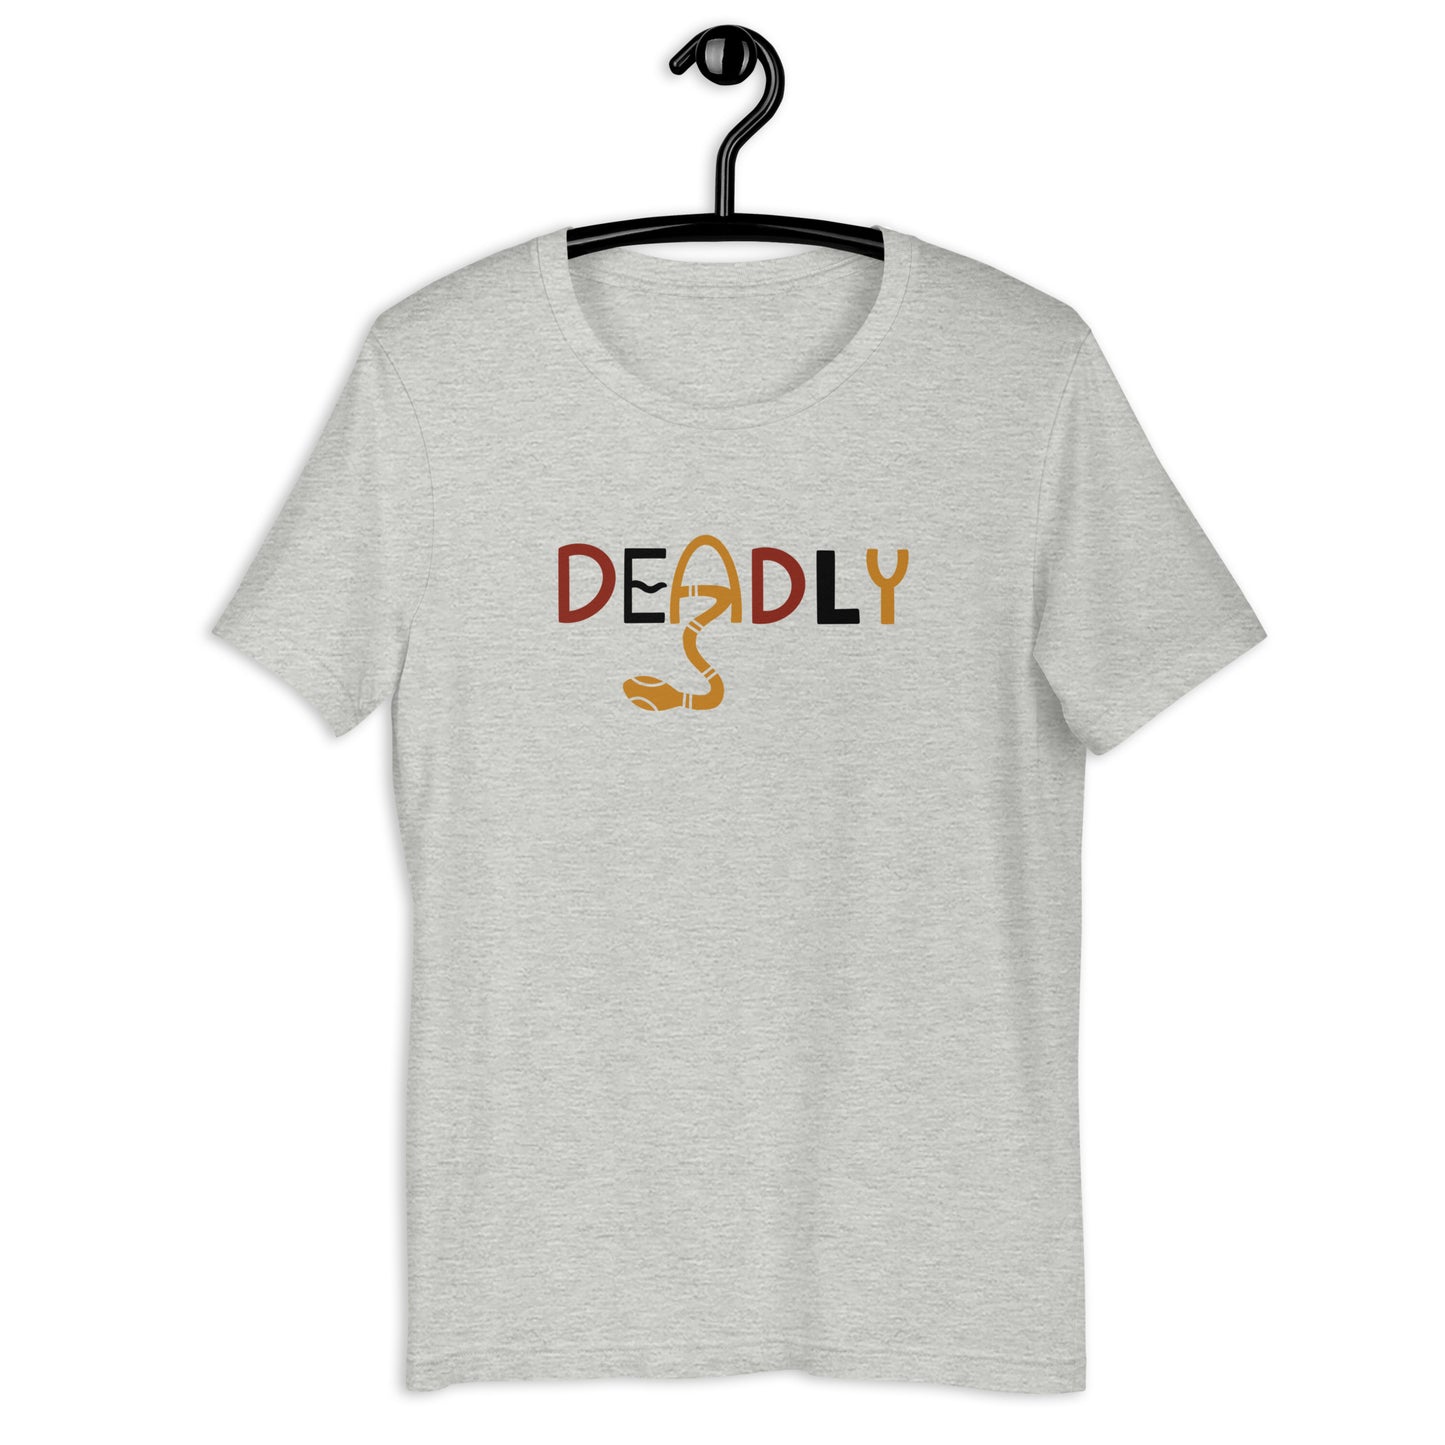 Deadly Plus Size T-Shirt (Unisex)